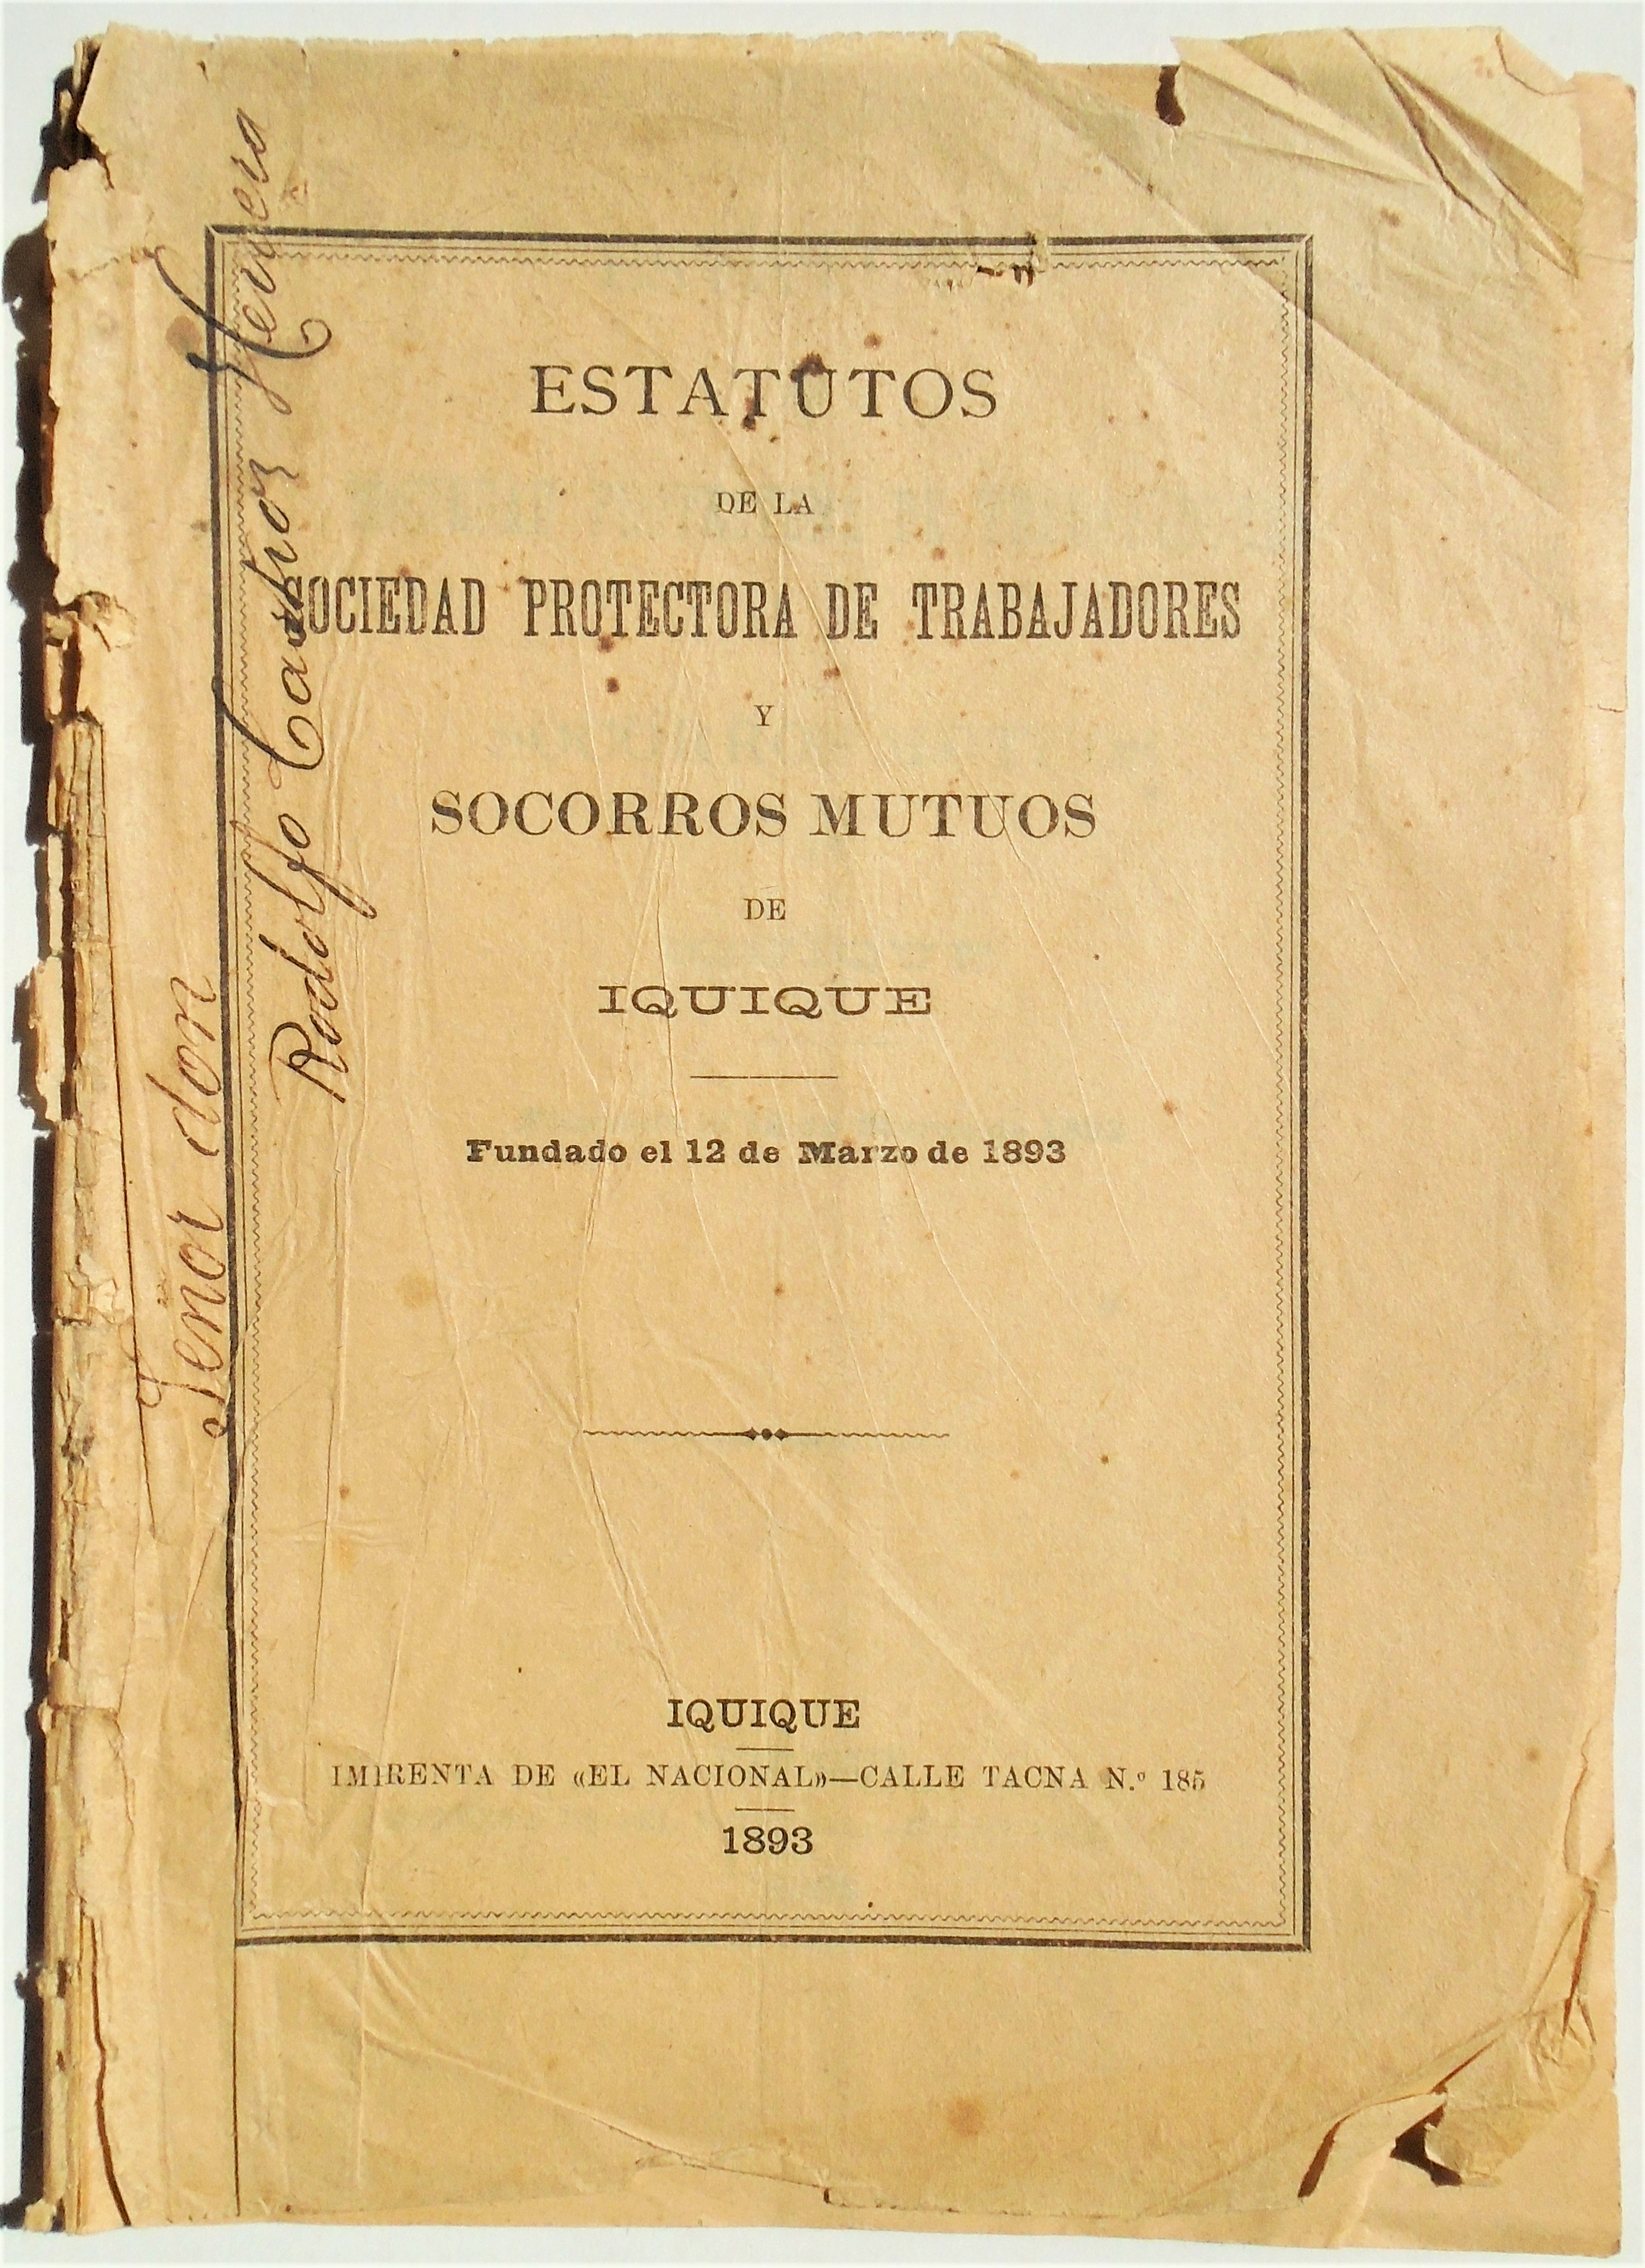 Estatutos de la sociedad protectora de trabajadores y socorros mutuos de Iquique